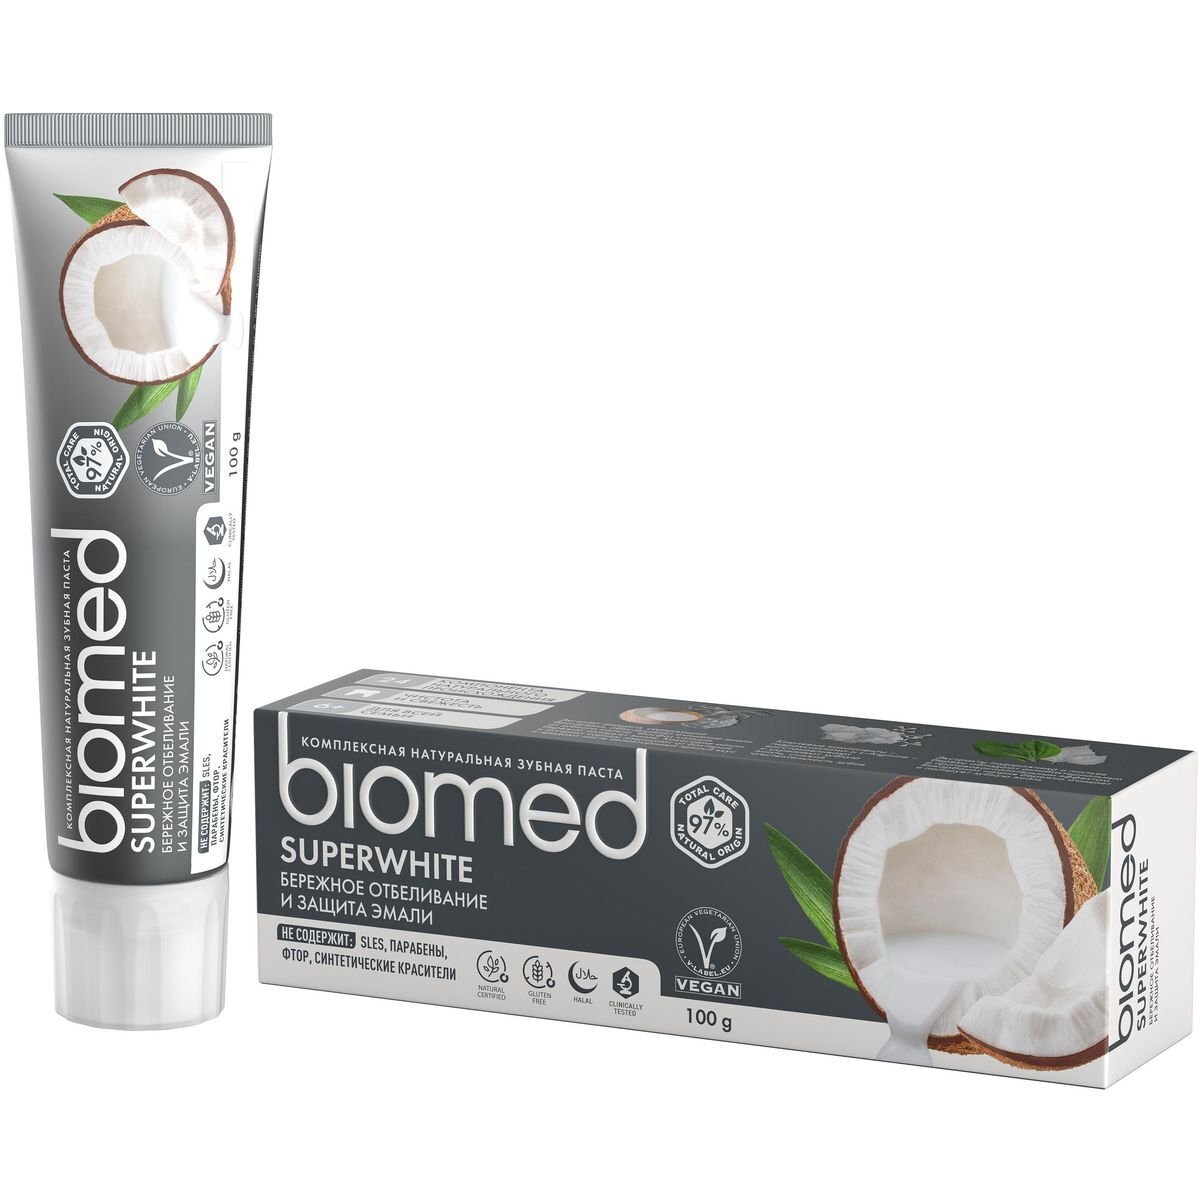 Зубная паста biomed biomed superwhite супервайт, 100 гр. фото 1